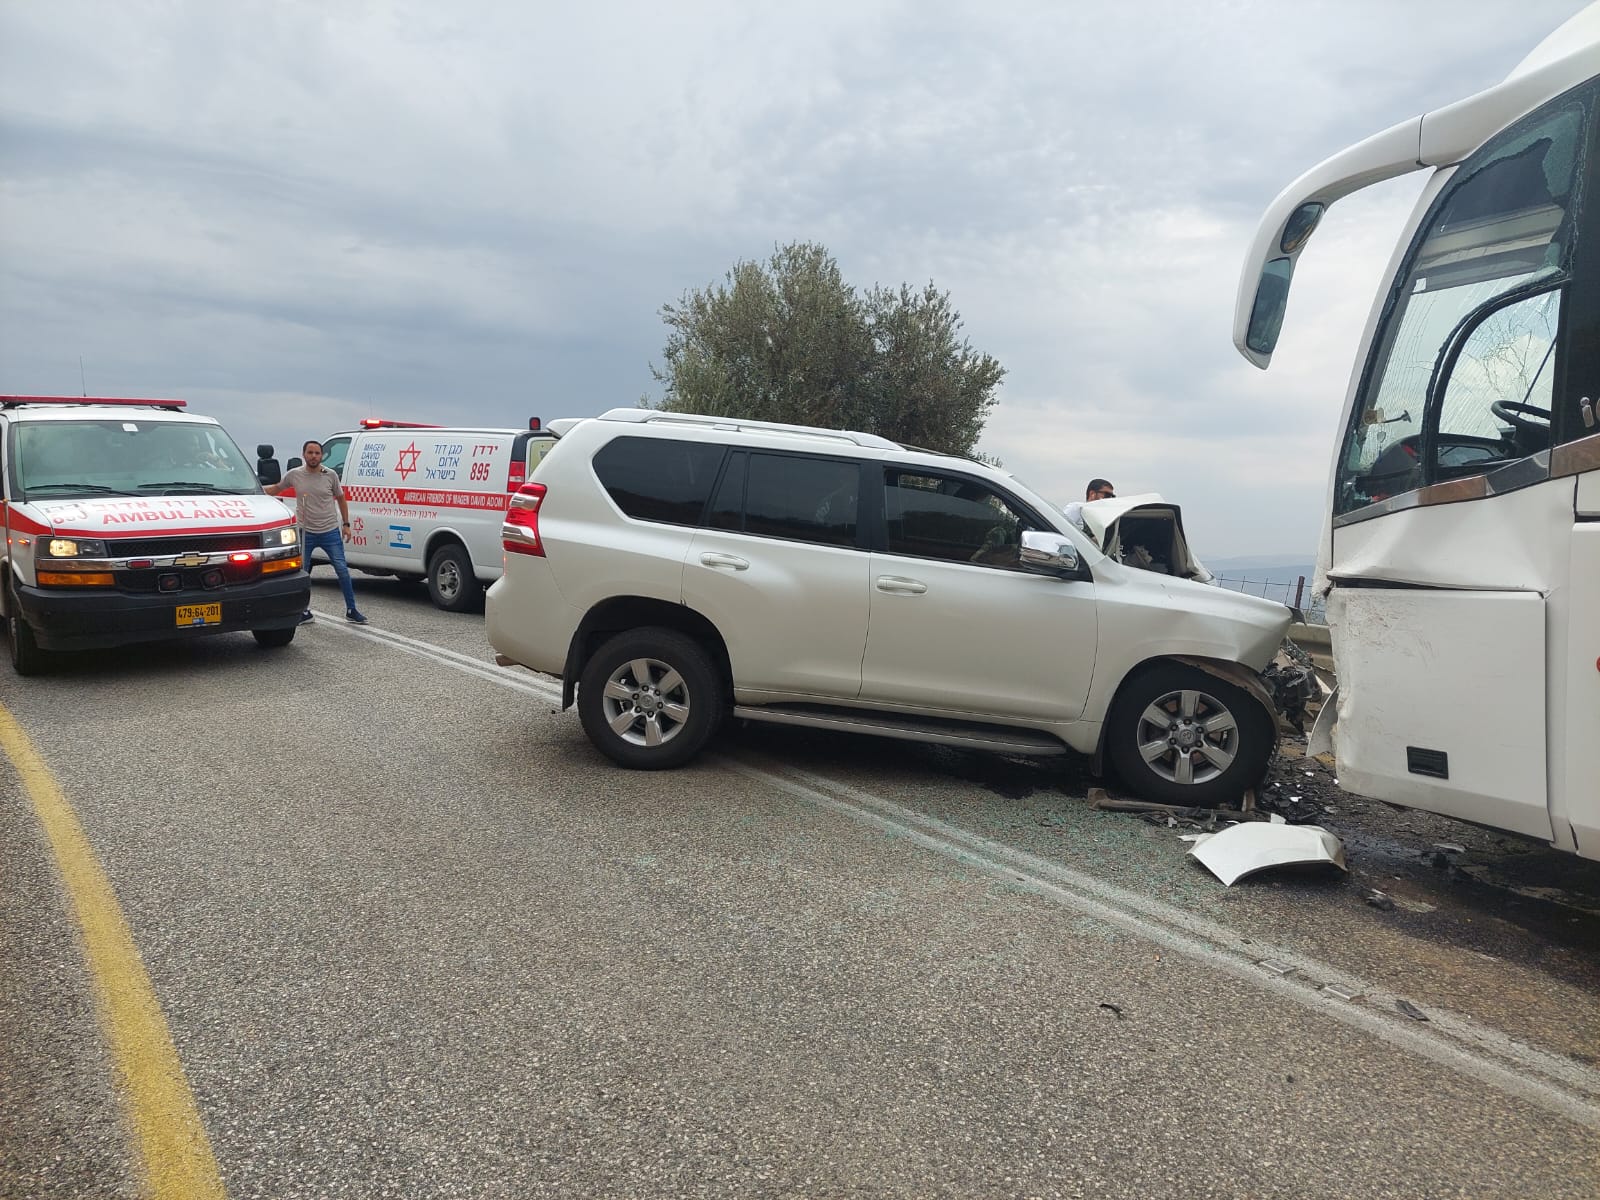 תאונת דרכים בין אוטובוס לרכב בכביש 99 סמוך לצומת שיאון: 14 פצועים במצב בינוני וקל